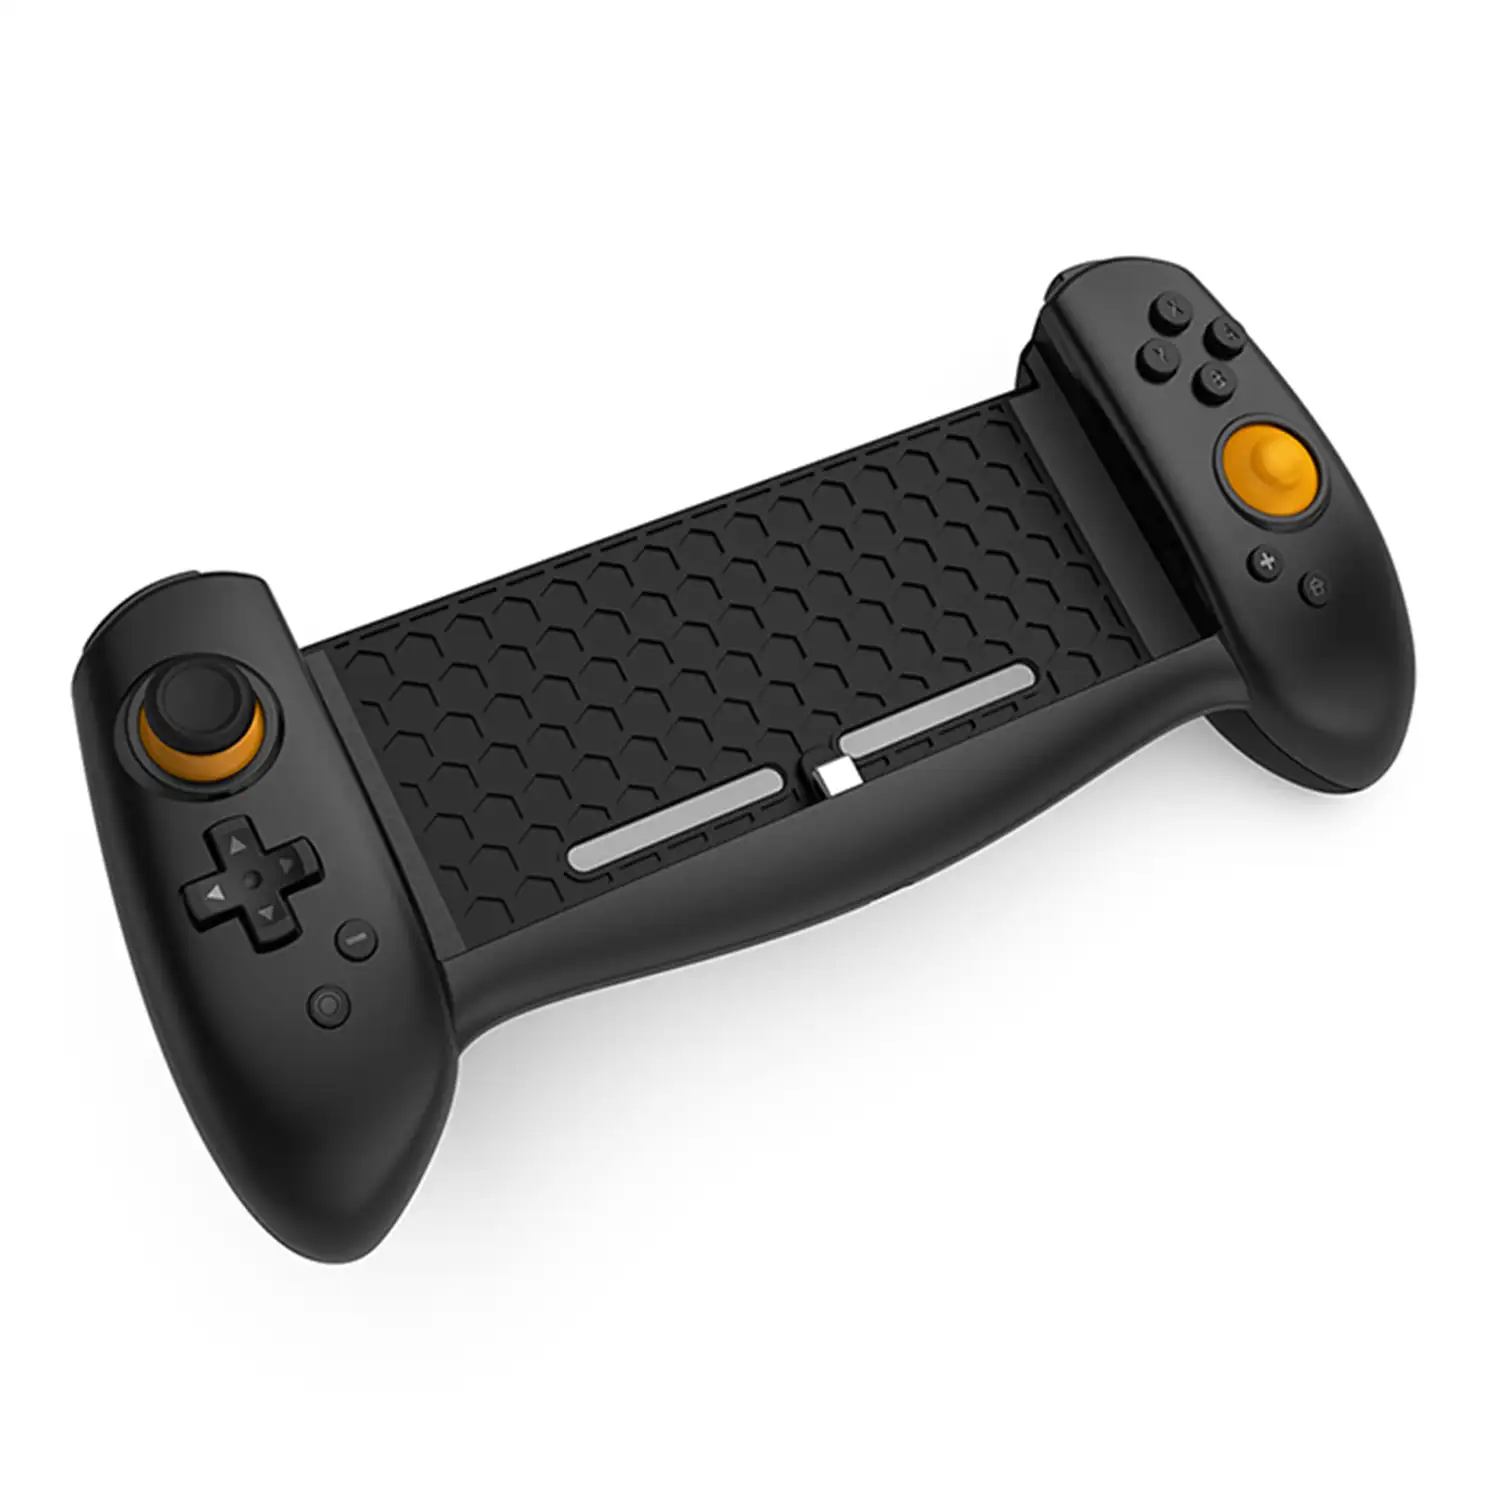 Mando Grip TNS-18133C compatible con Nintendo Switch. Conexión auto, alta ergonomía, motores de vibración, sensores giroscópicos.